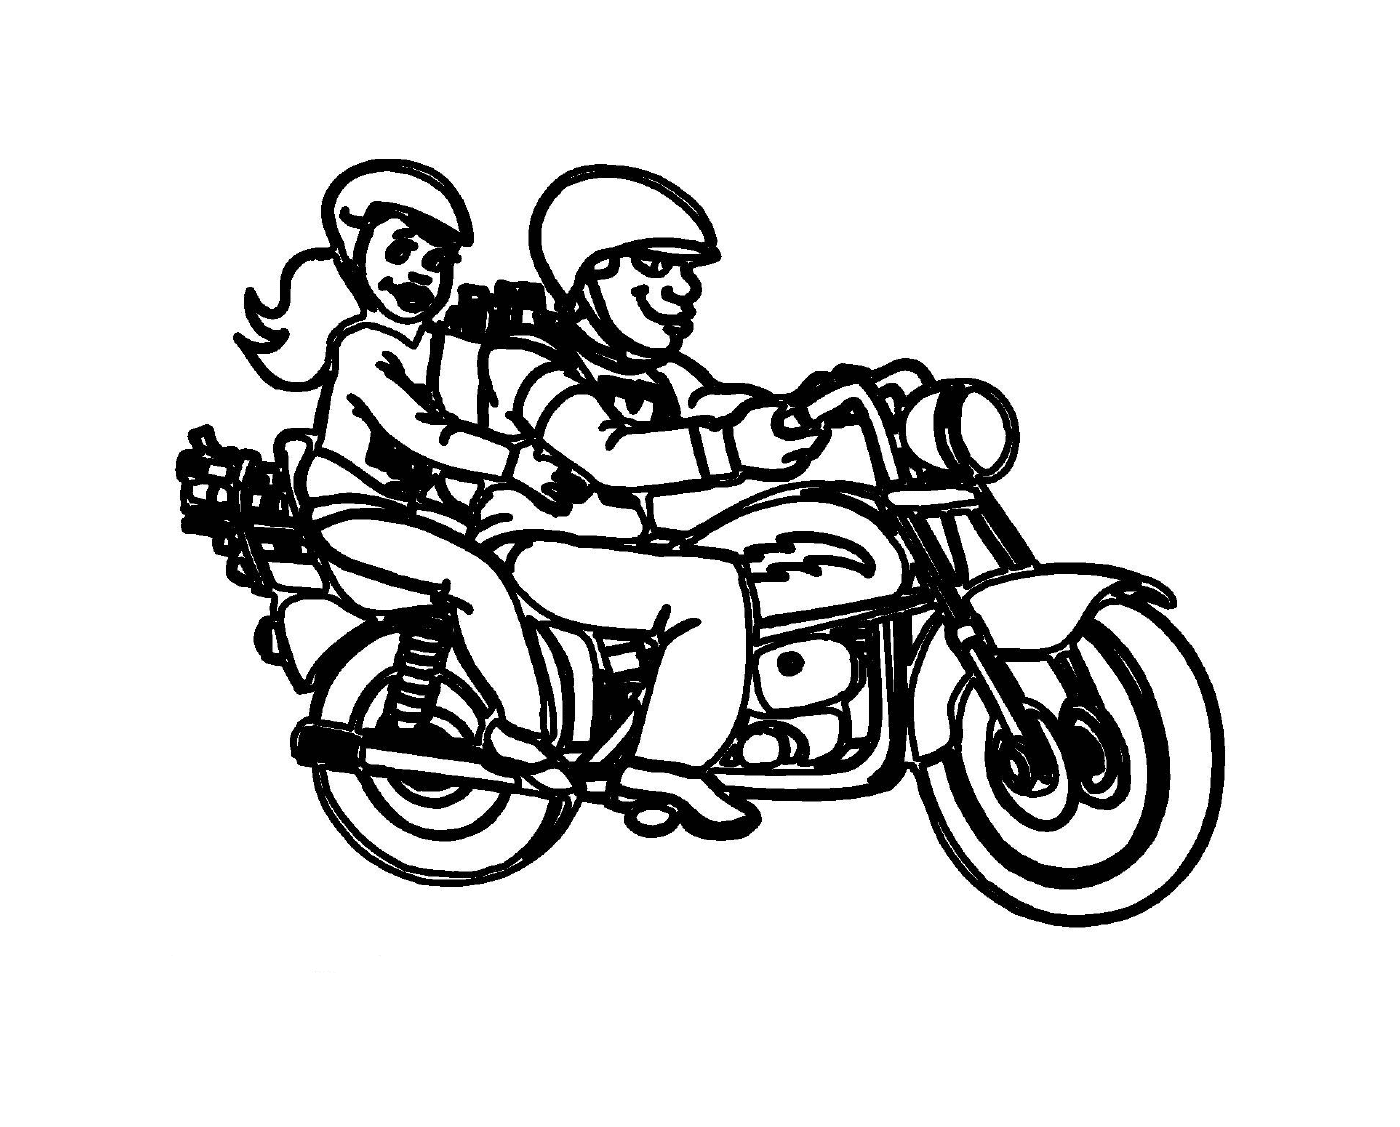   deux personnes sur motocyclette 